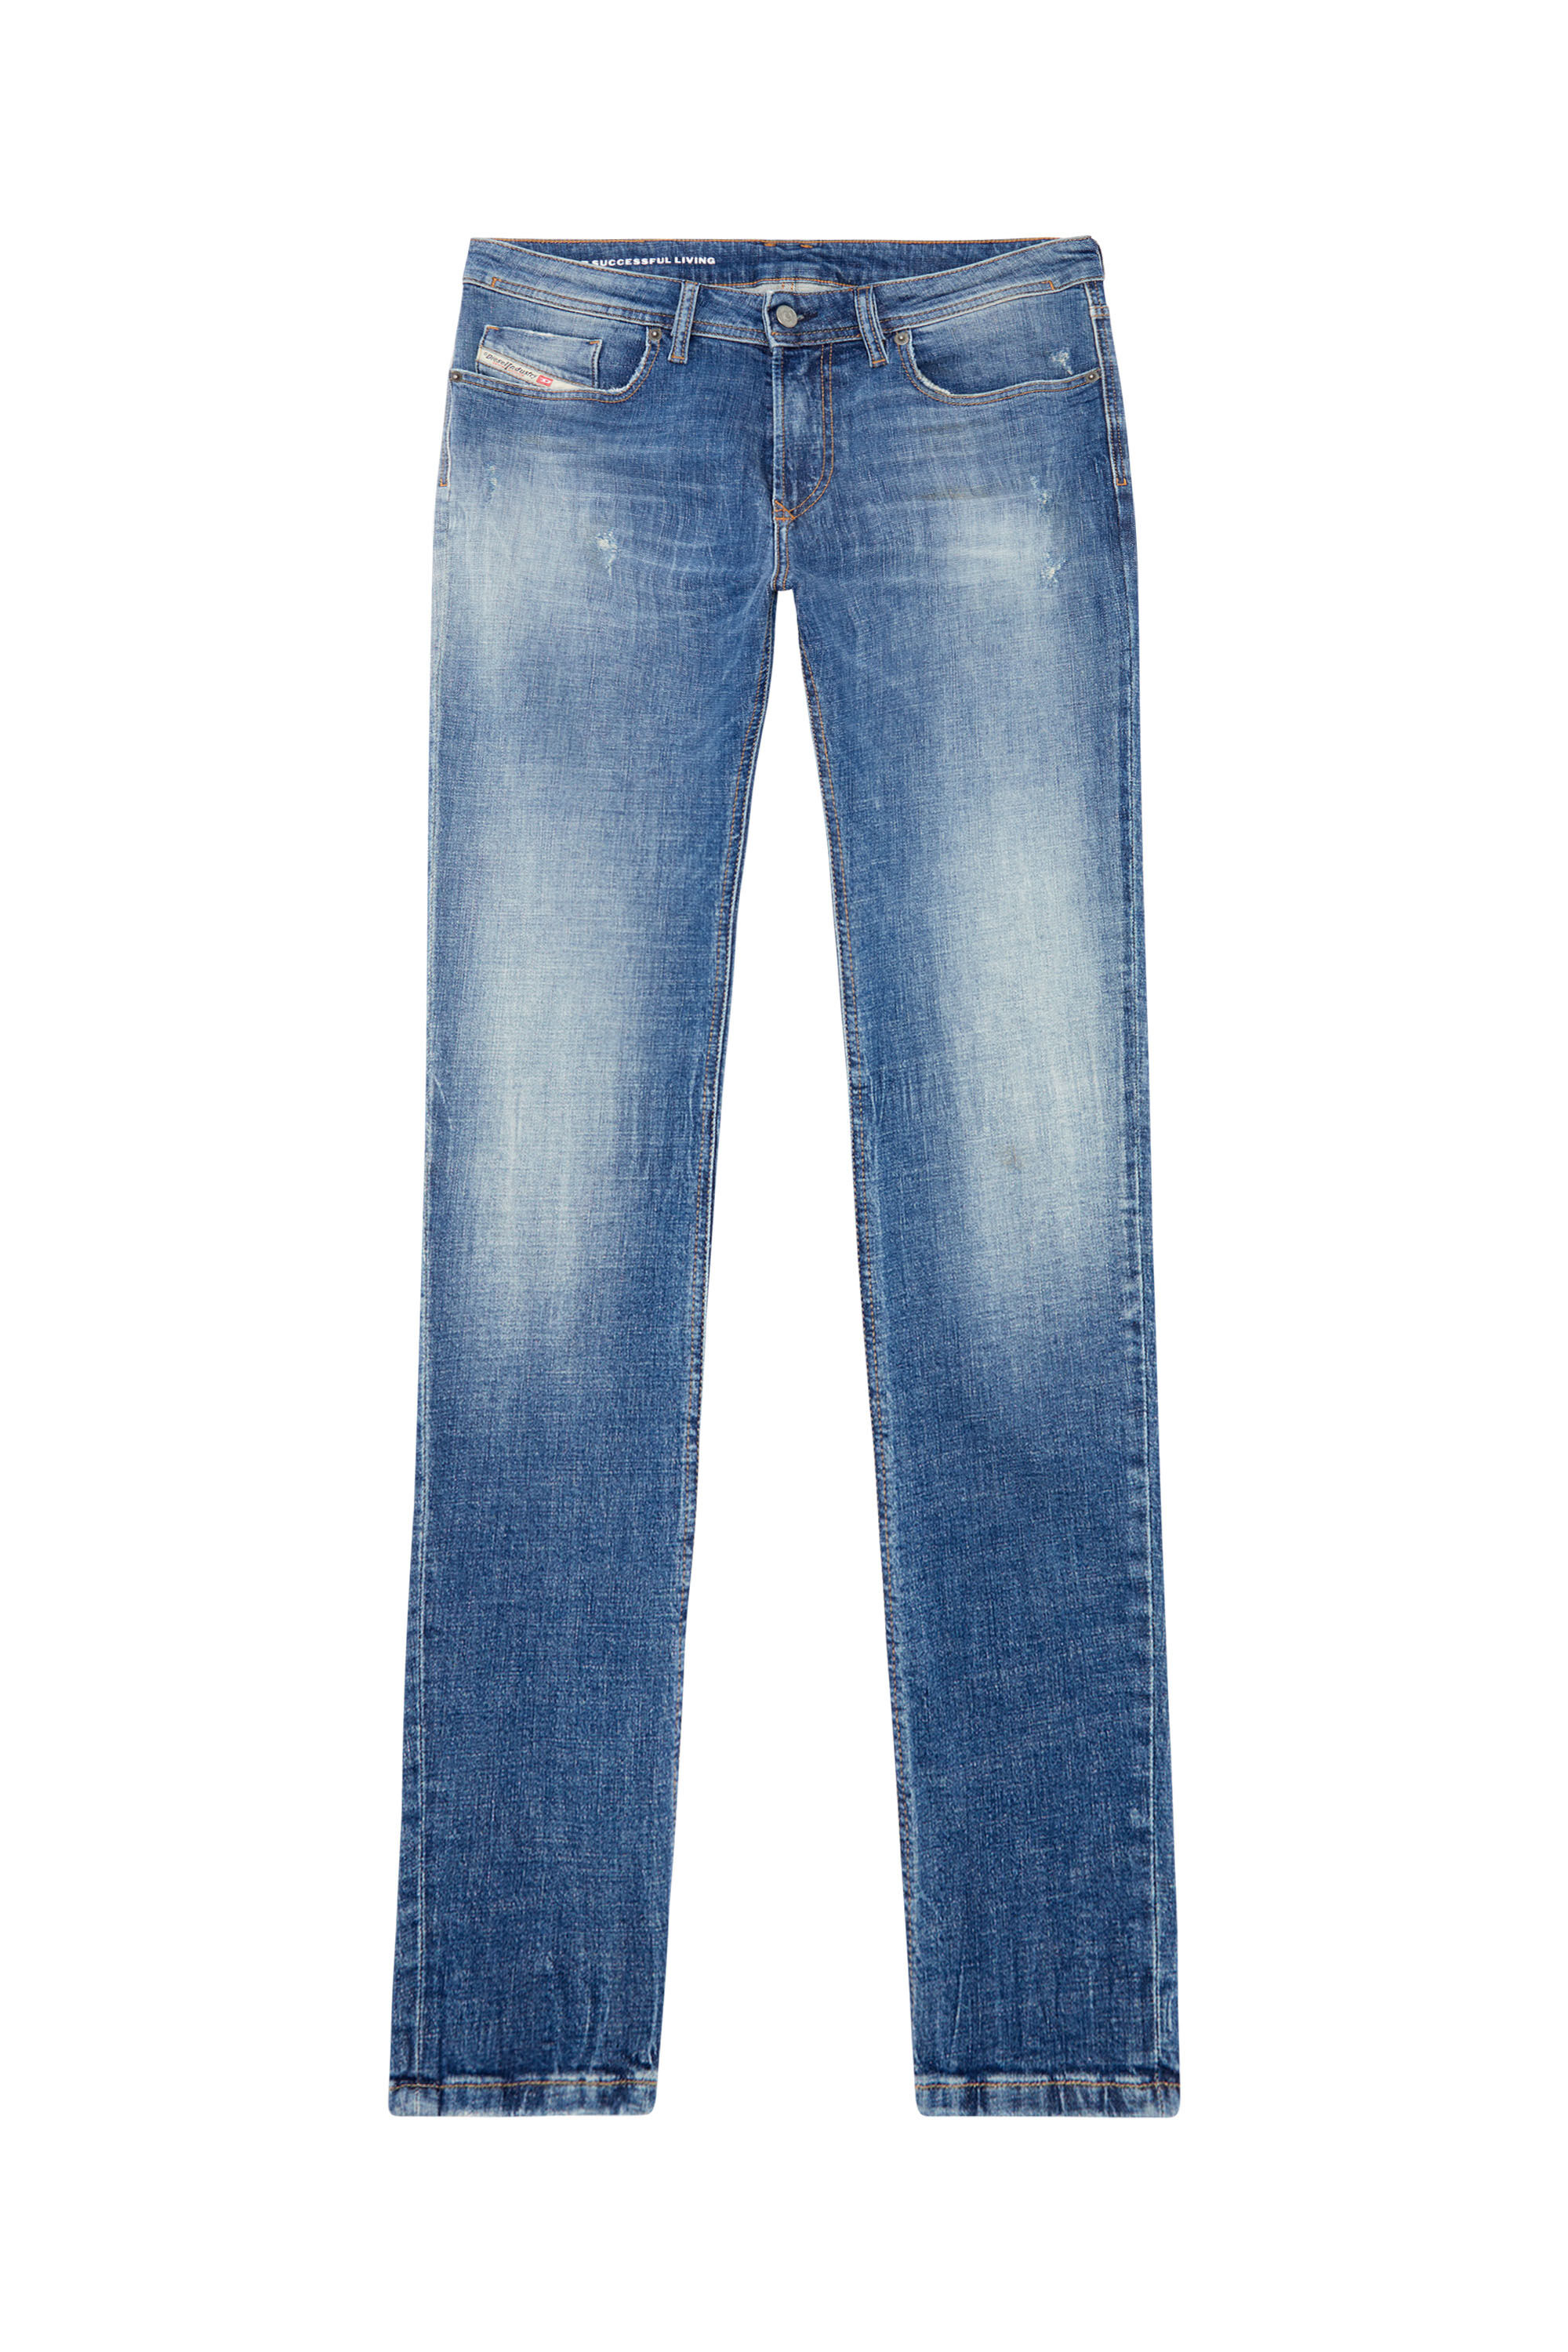 Men's Skinny Jeans | Medium blue | Diesel 1979 Sleenker